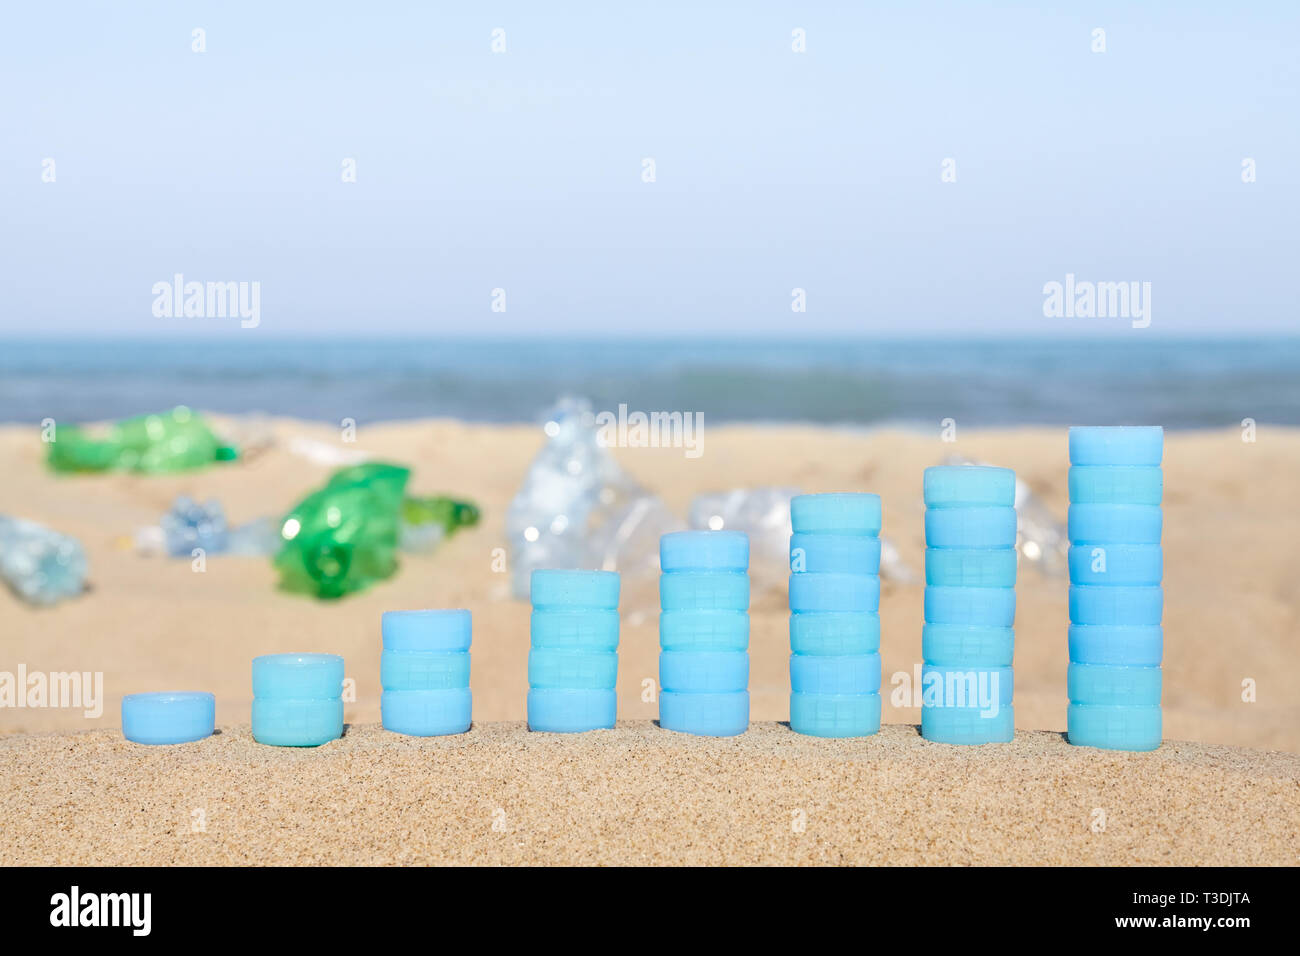 Diagramm aus Kunststoff Flaschen Kappen auf Sand zeigt die Zunahme der single use Kunststoff Produkte auf den europäischen Stränden gefunden. Stockfoto